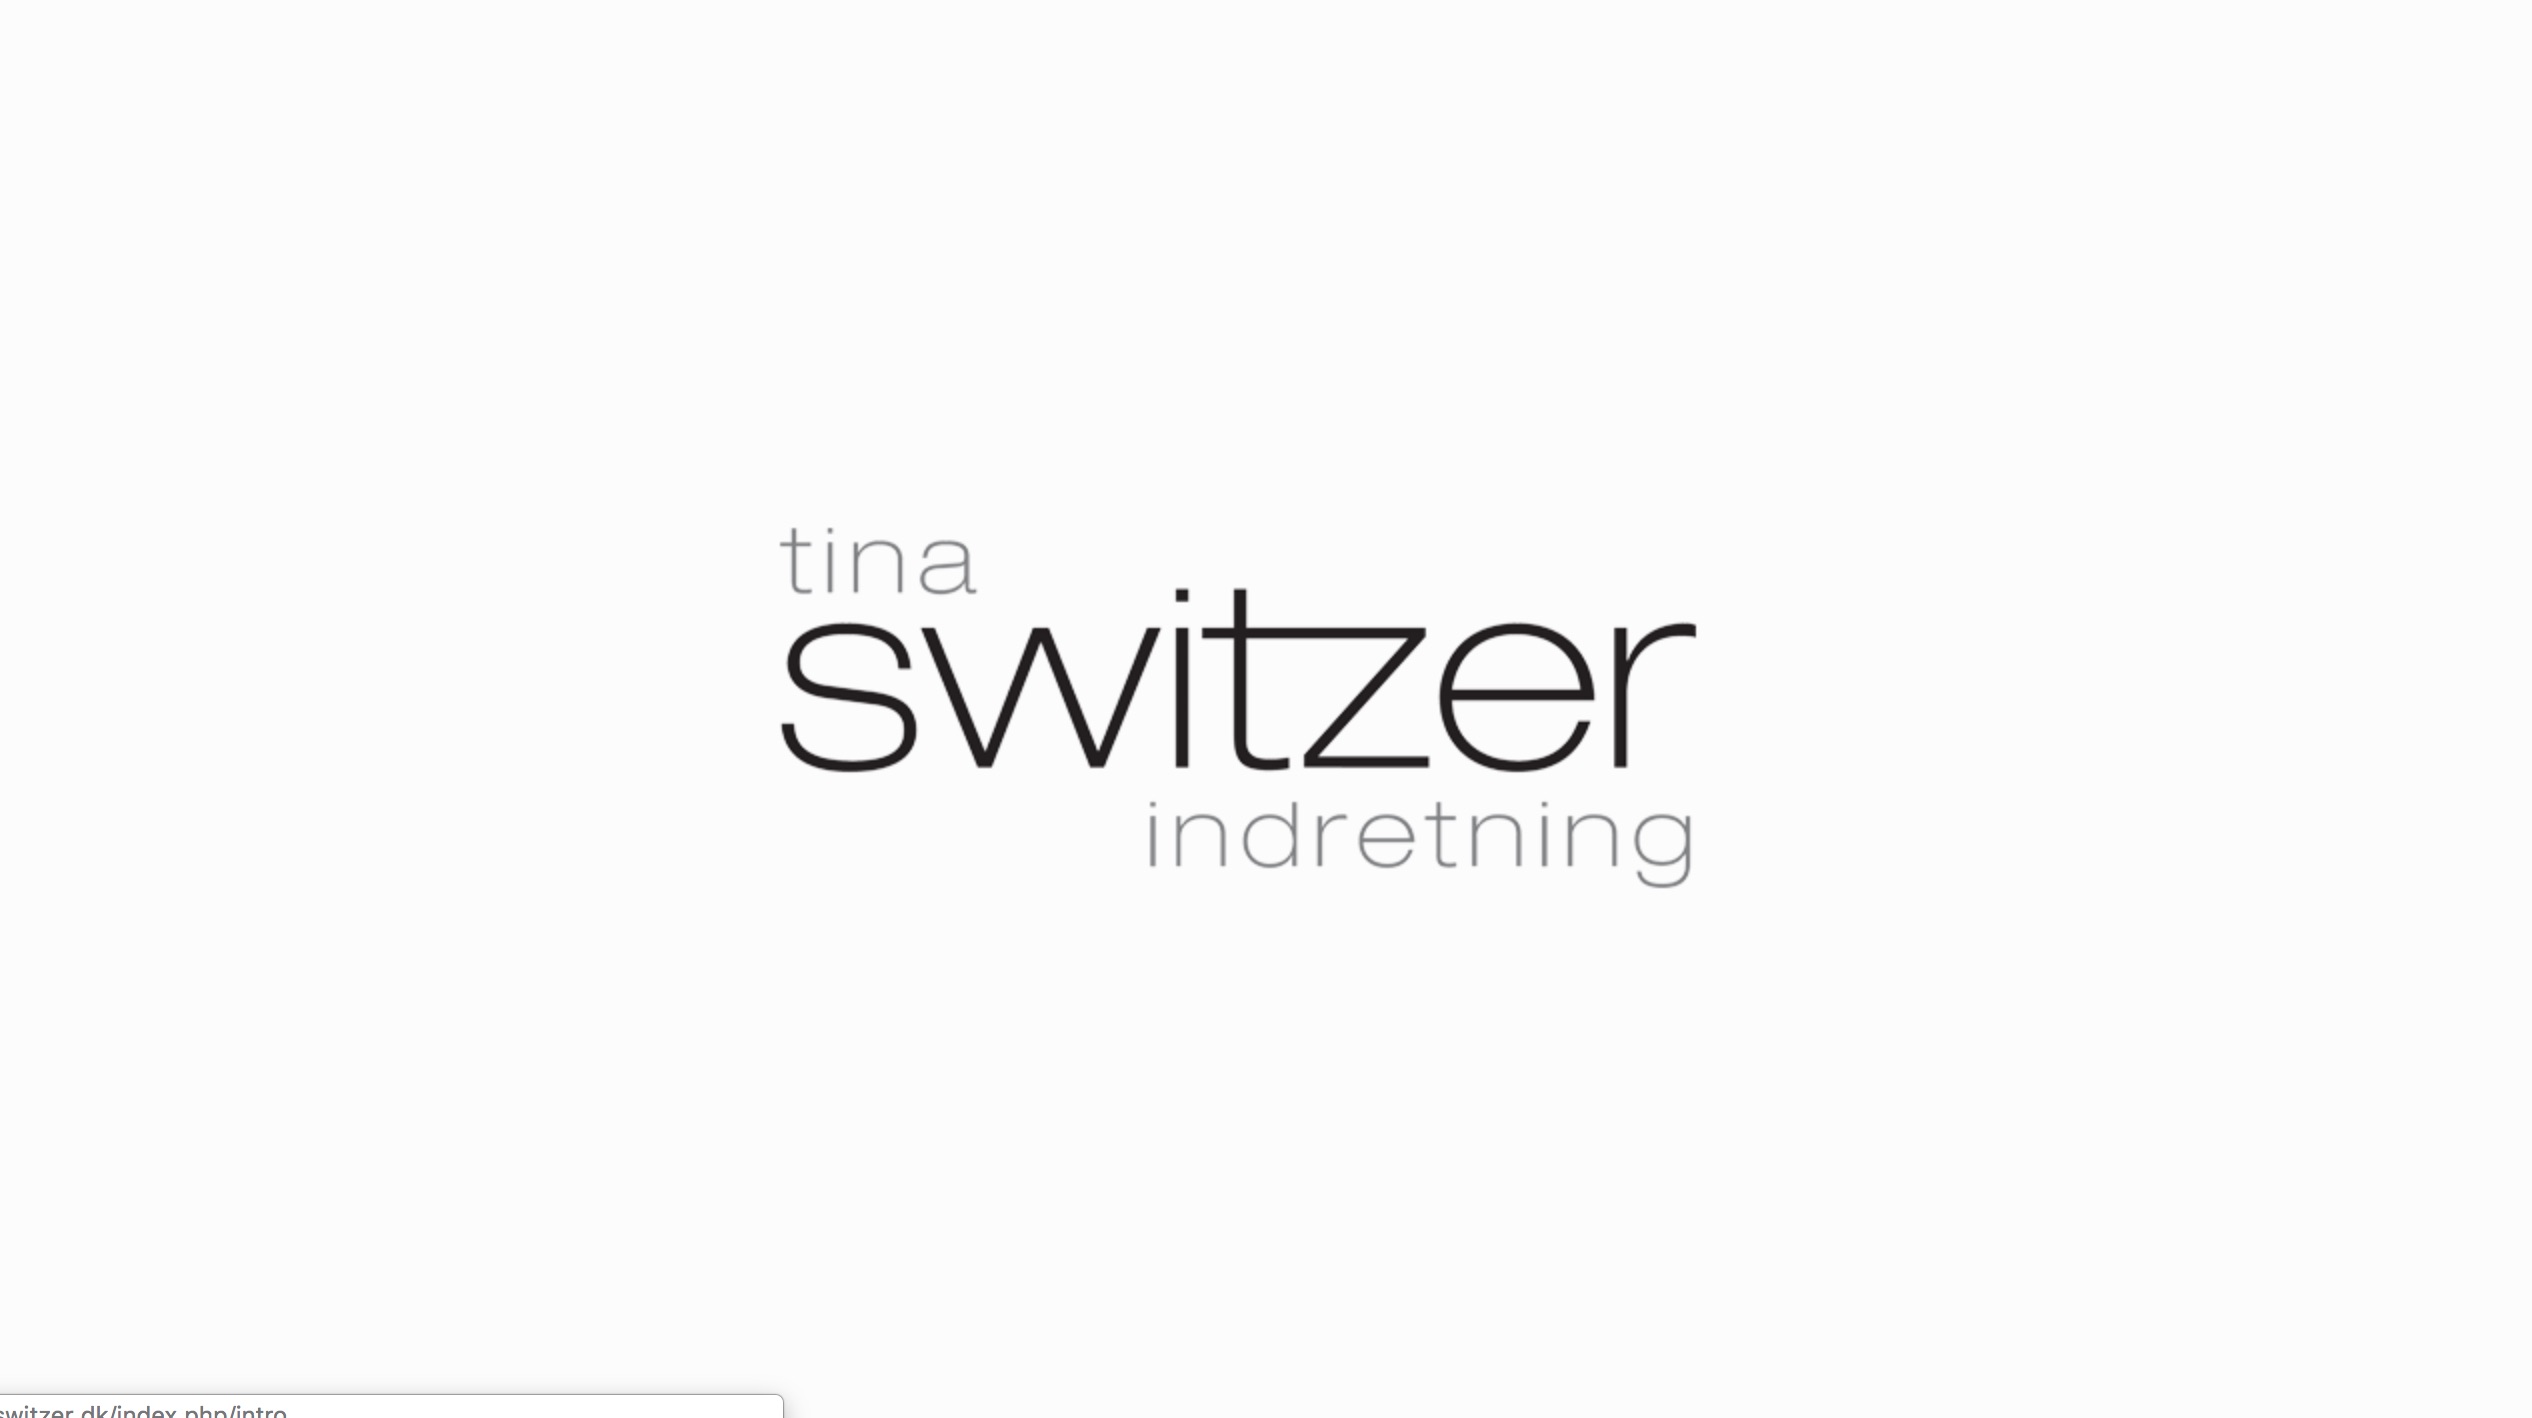 Tina Switzer